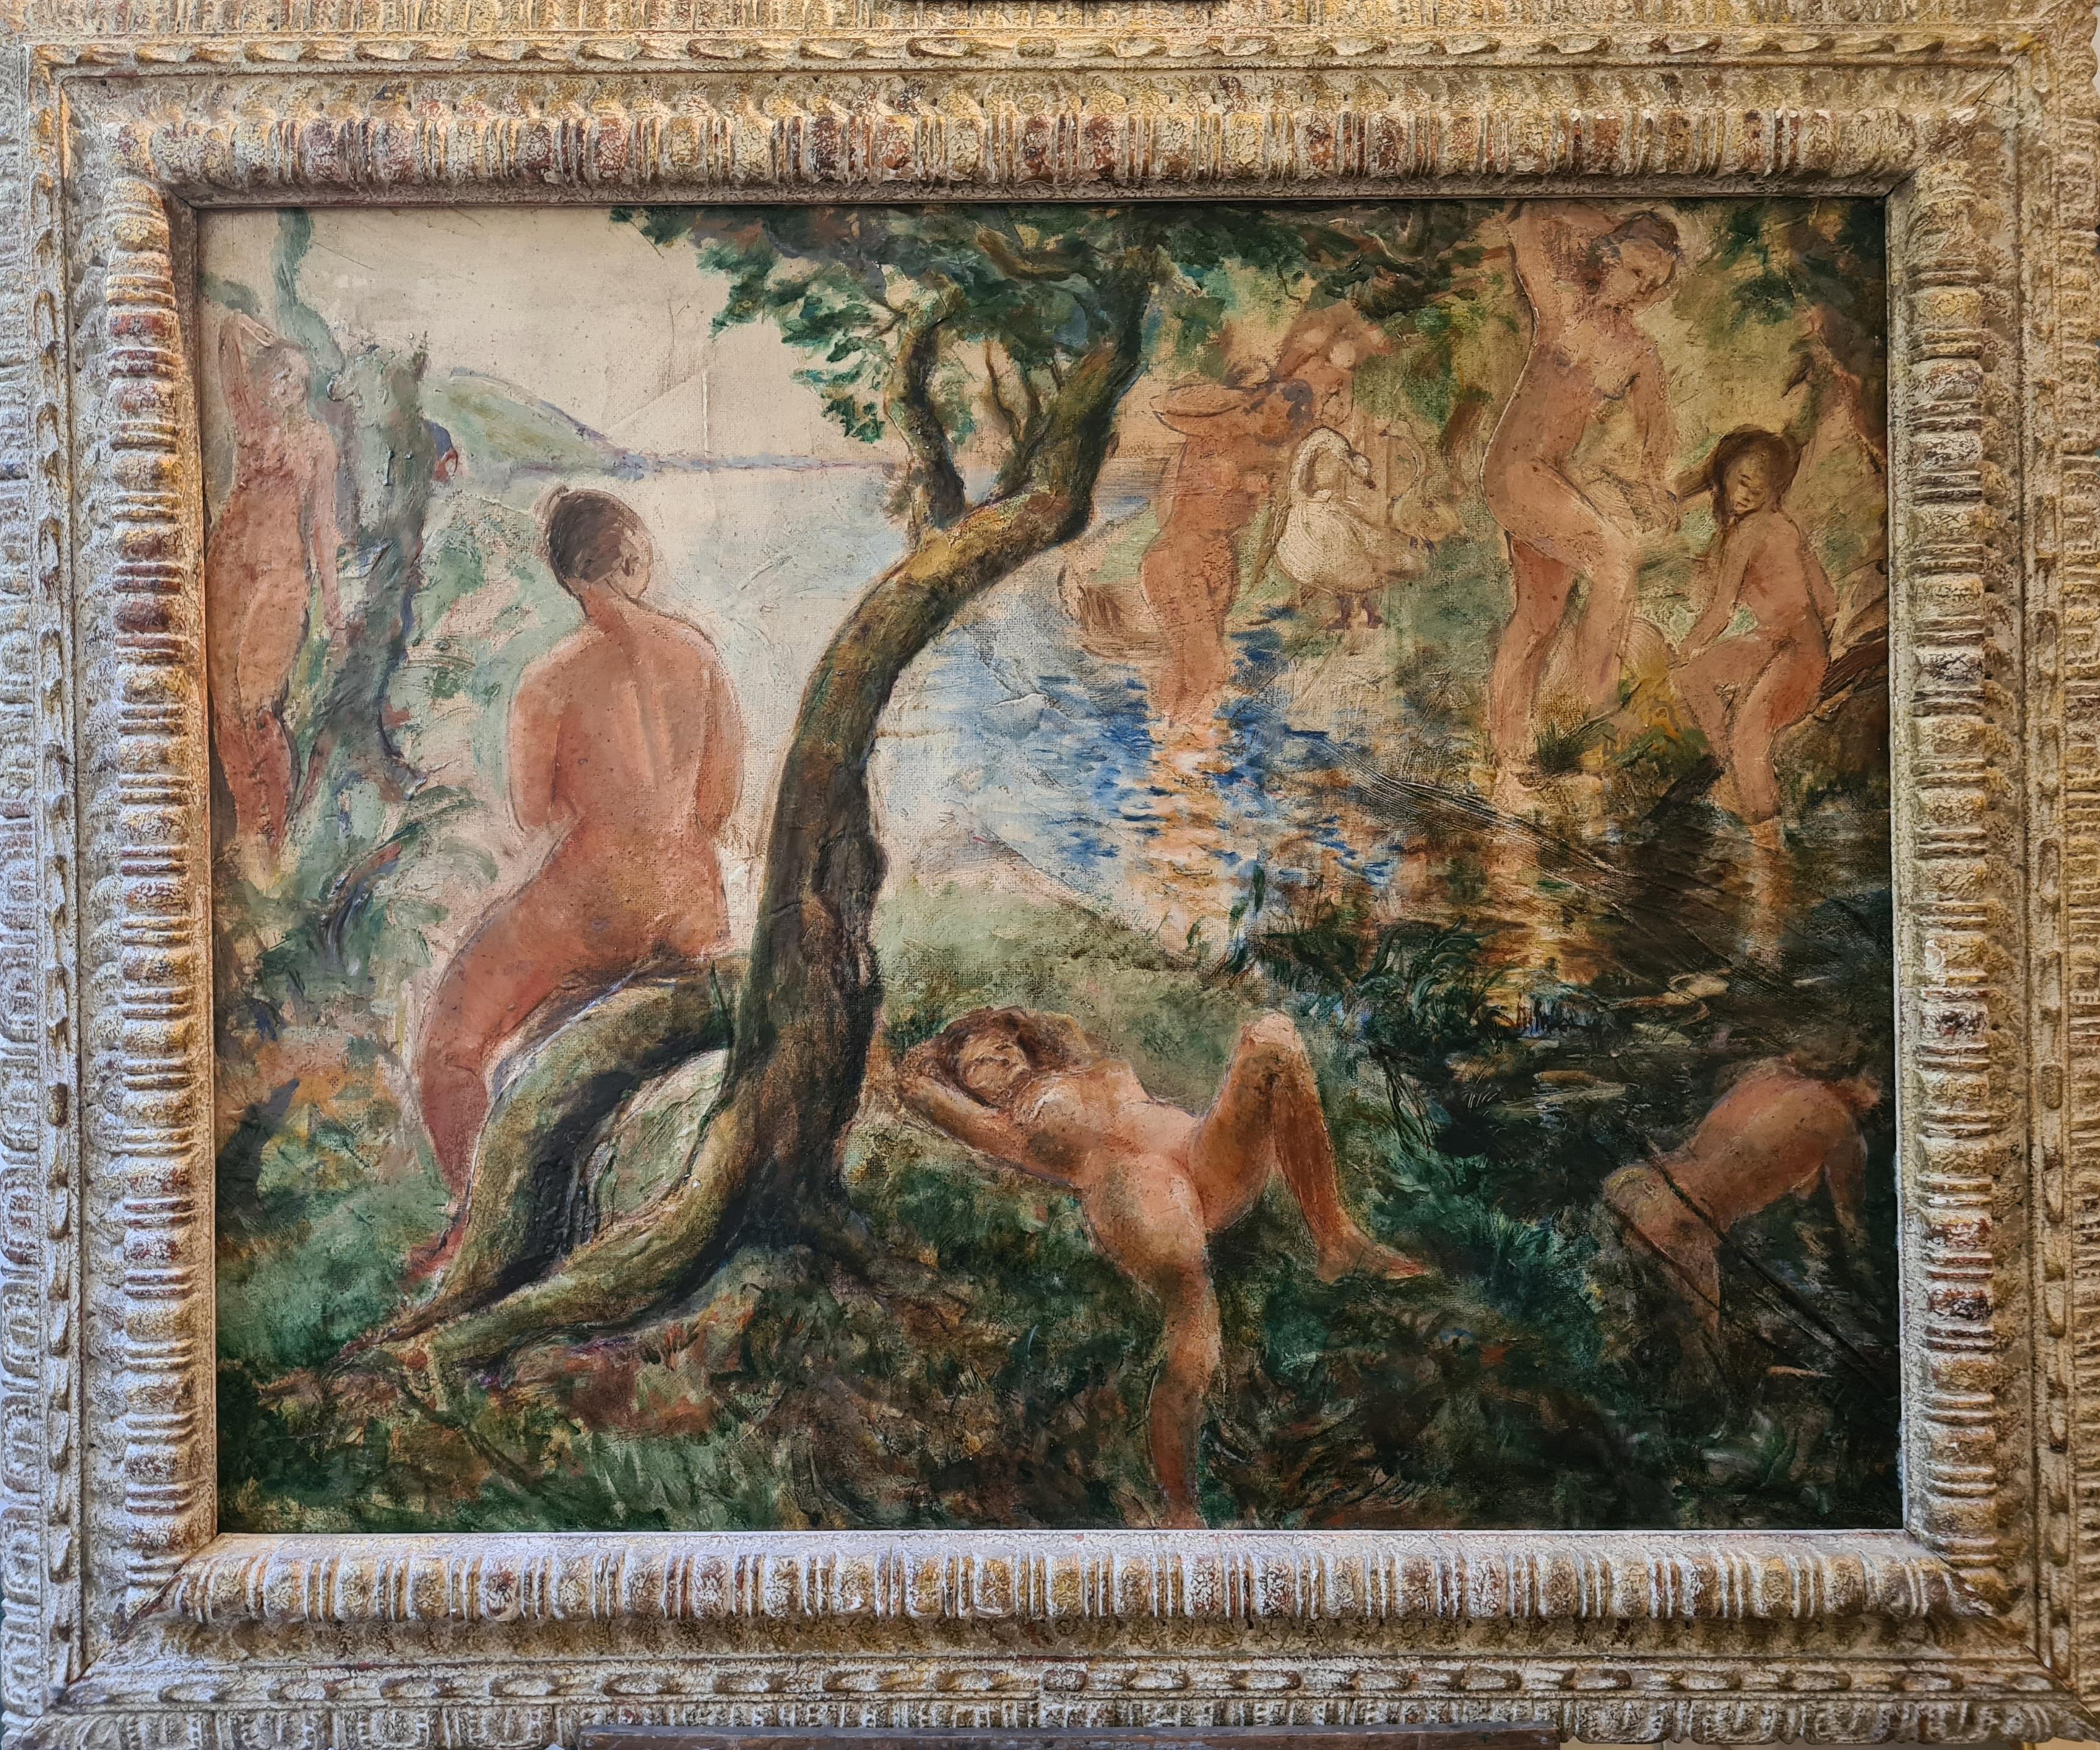 Unknown Nude Painting – Impressionistische großformatige weibliche Akte in einer Landschaft, "L' été a la rivière".